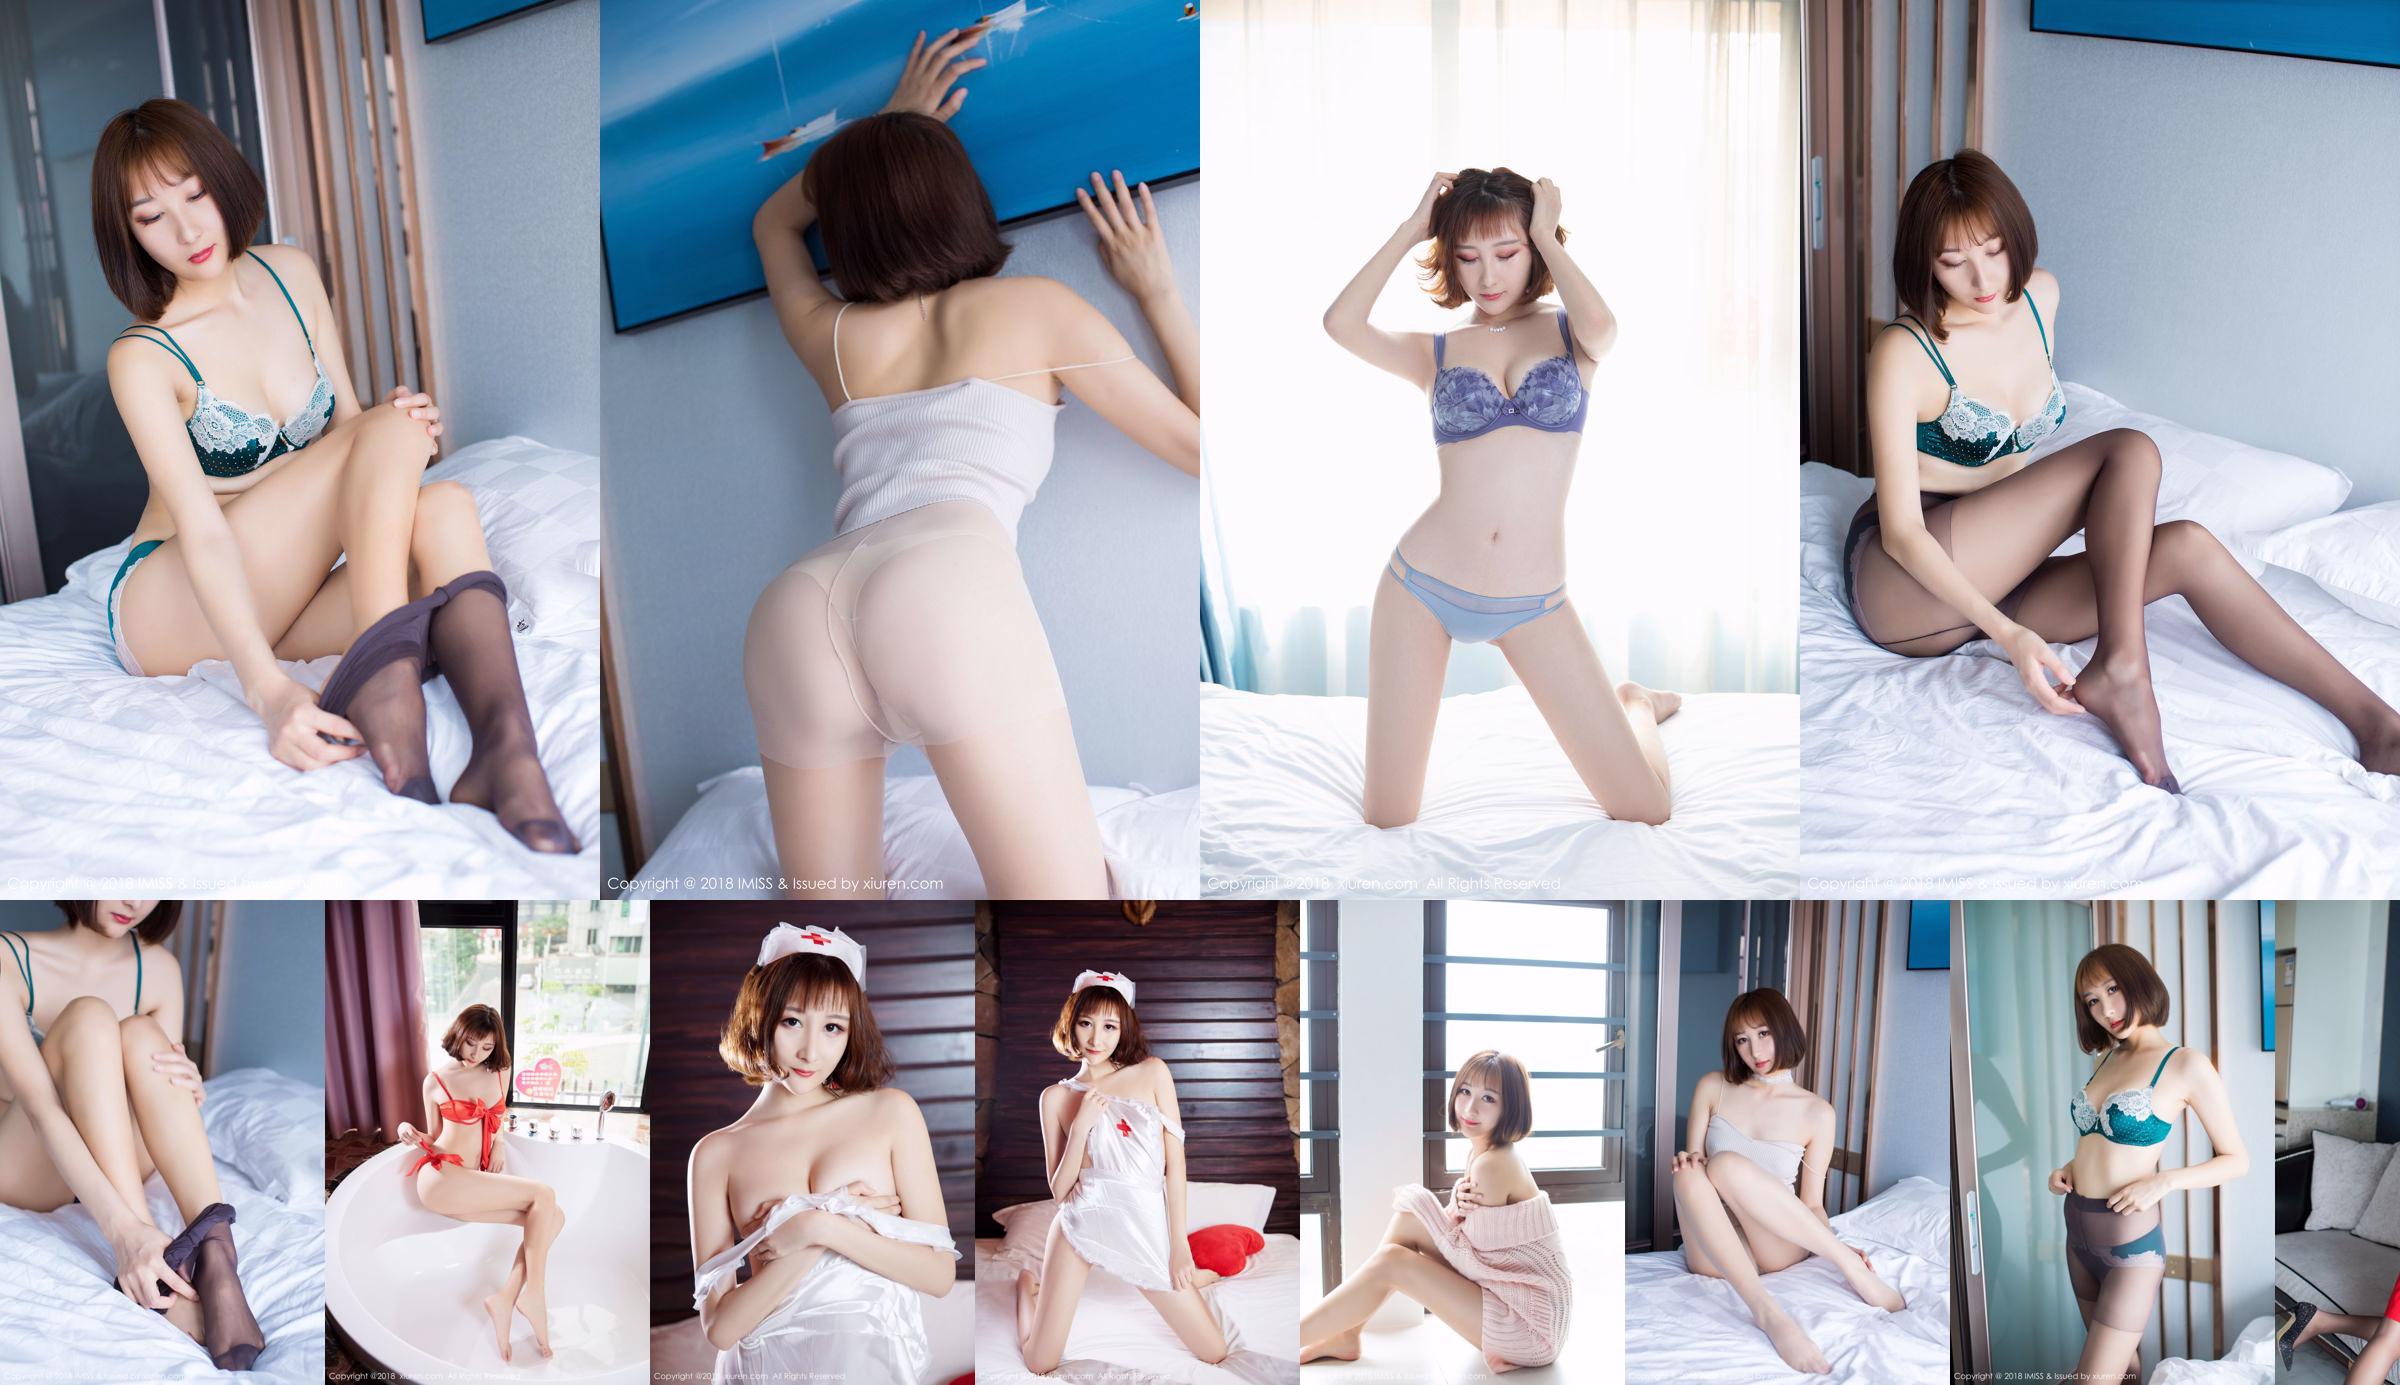 [Digi-Gra] Sumire Kurokawa Sumire Kurokawa Photoset 01 No.30e4d2 Halaman 6